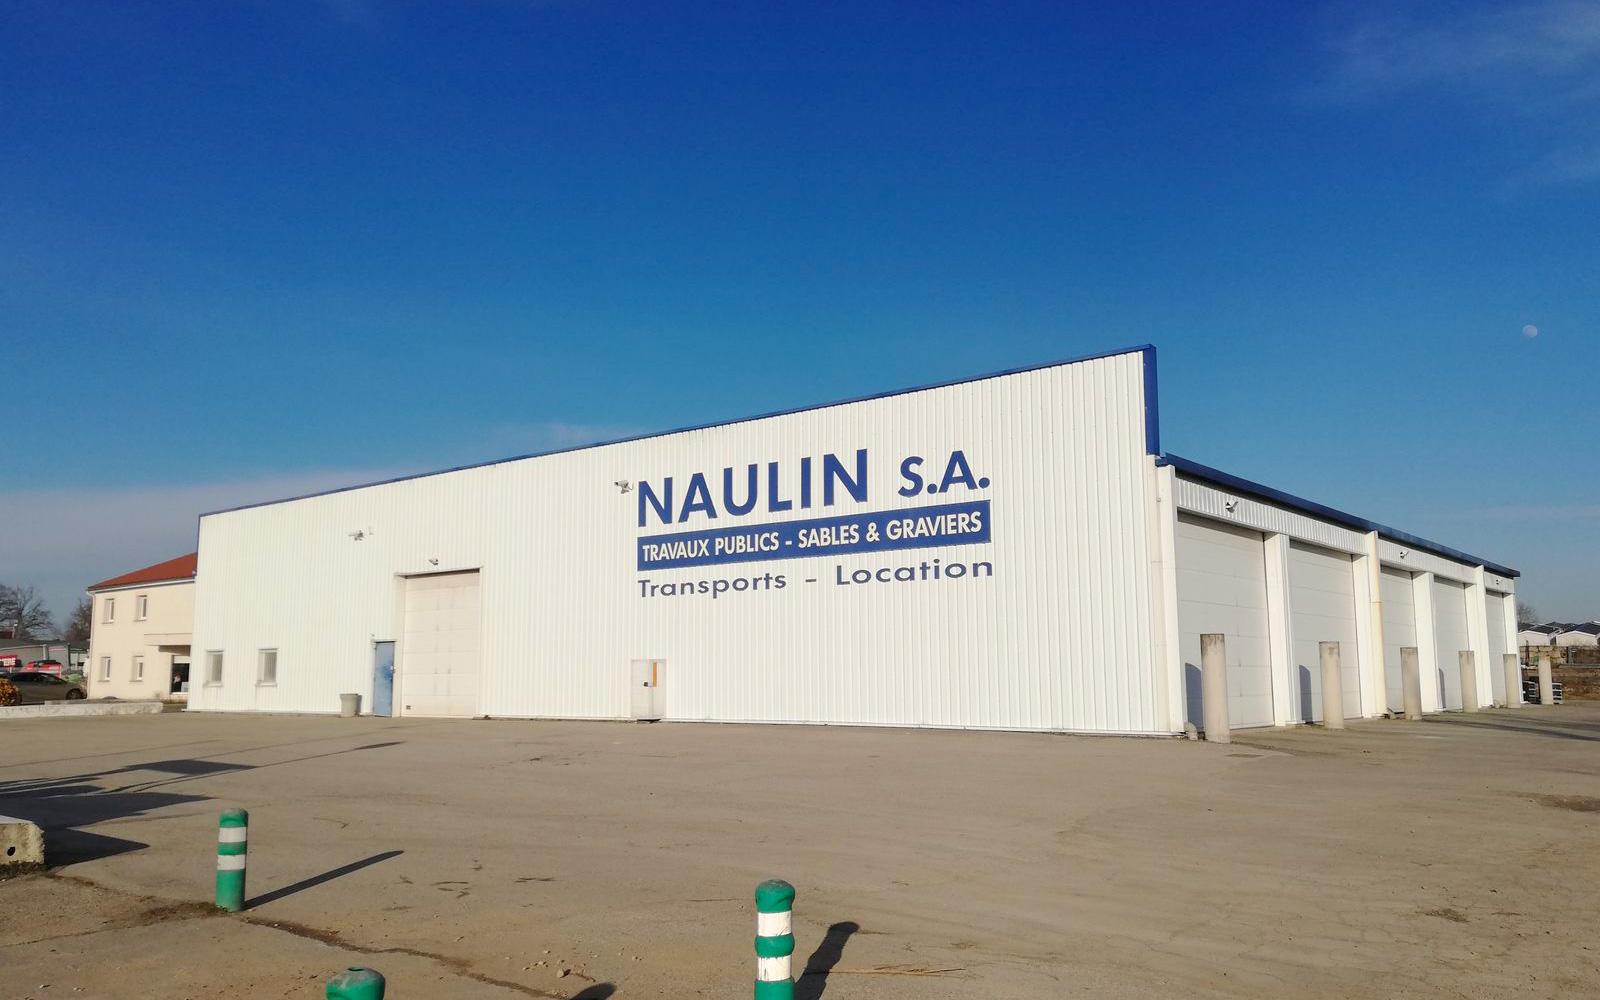 Entrepôt NAULIN SA à Civens dans la Loire près de Feurs